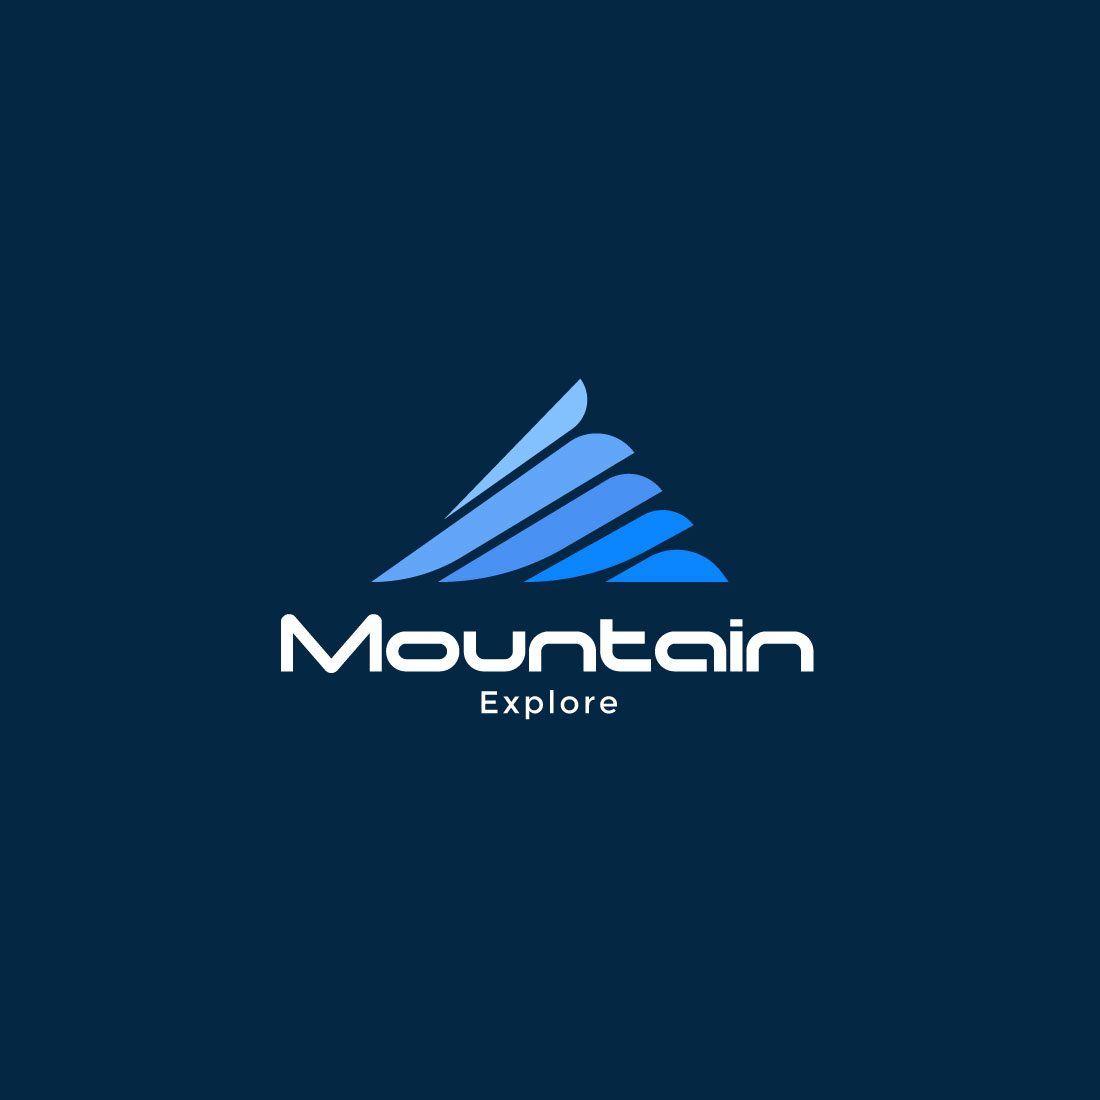 Mountain logo design template cover image.